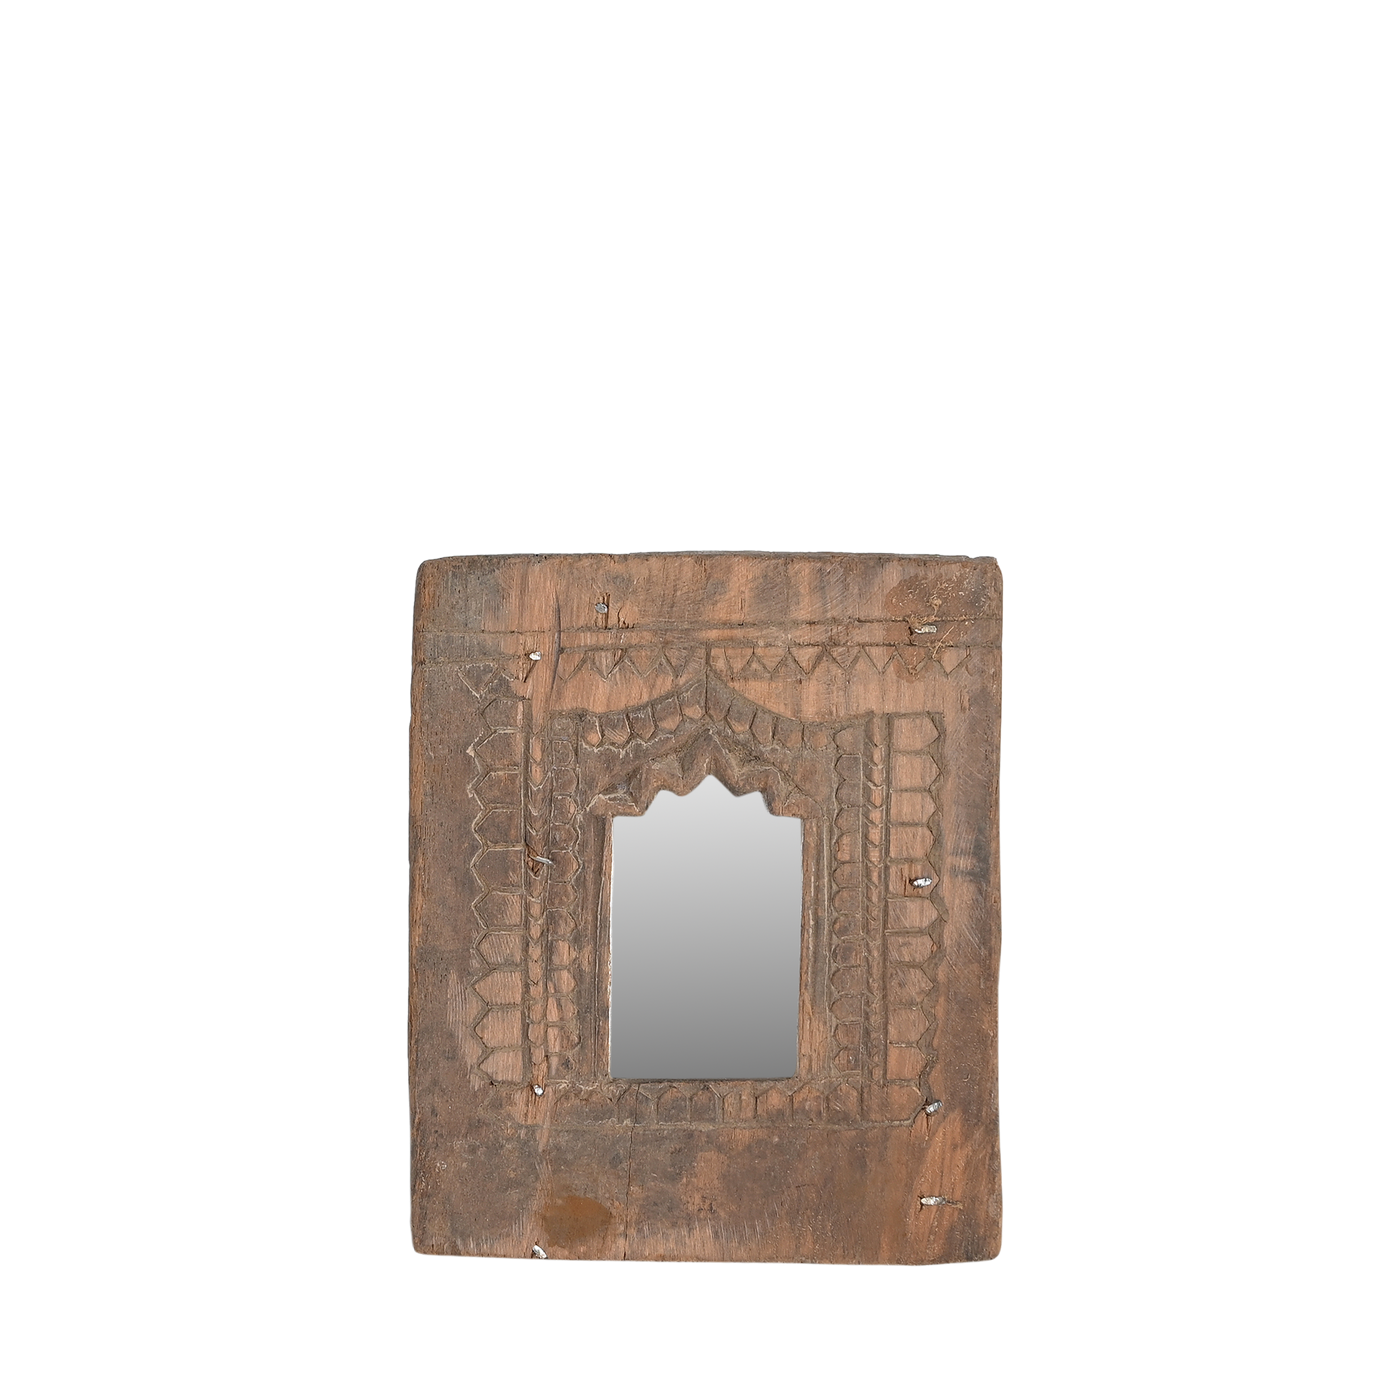 Mandir - Temple mirror n°30